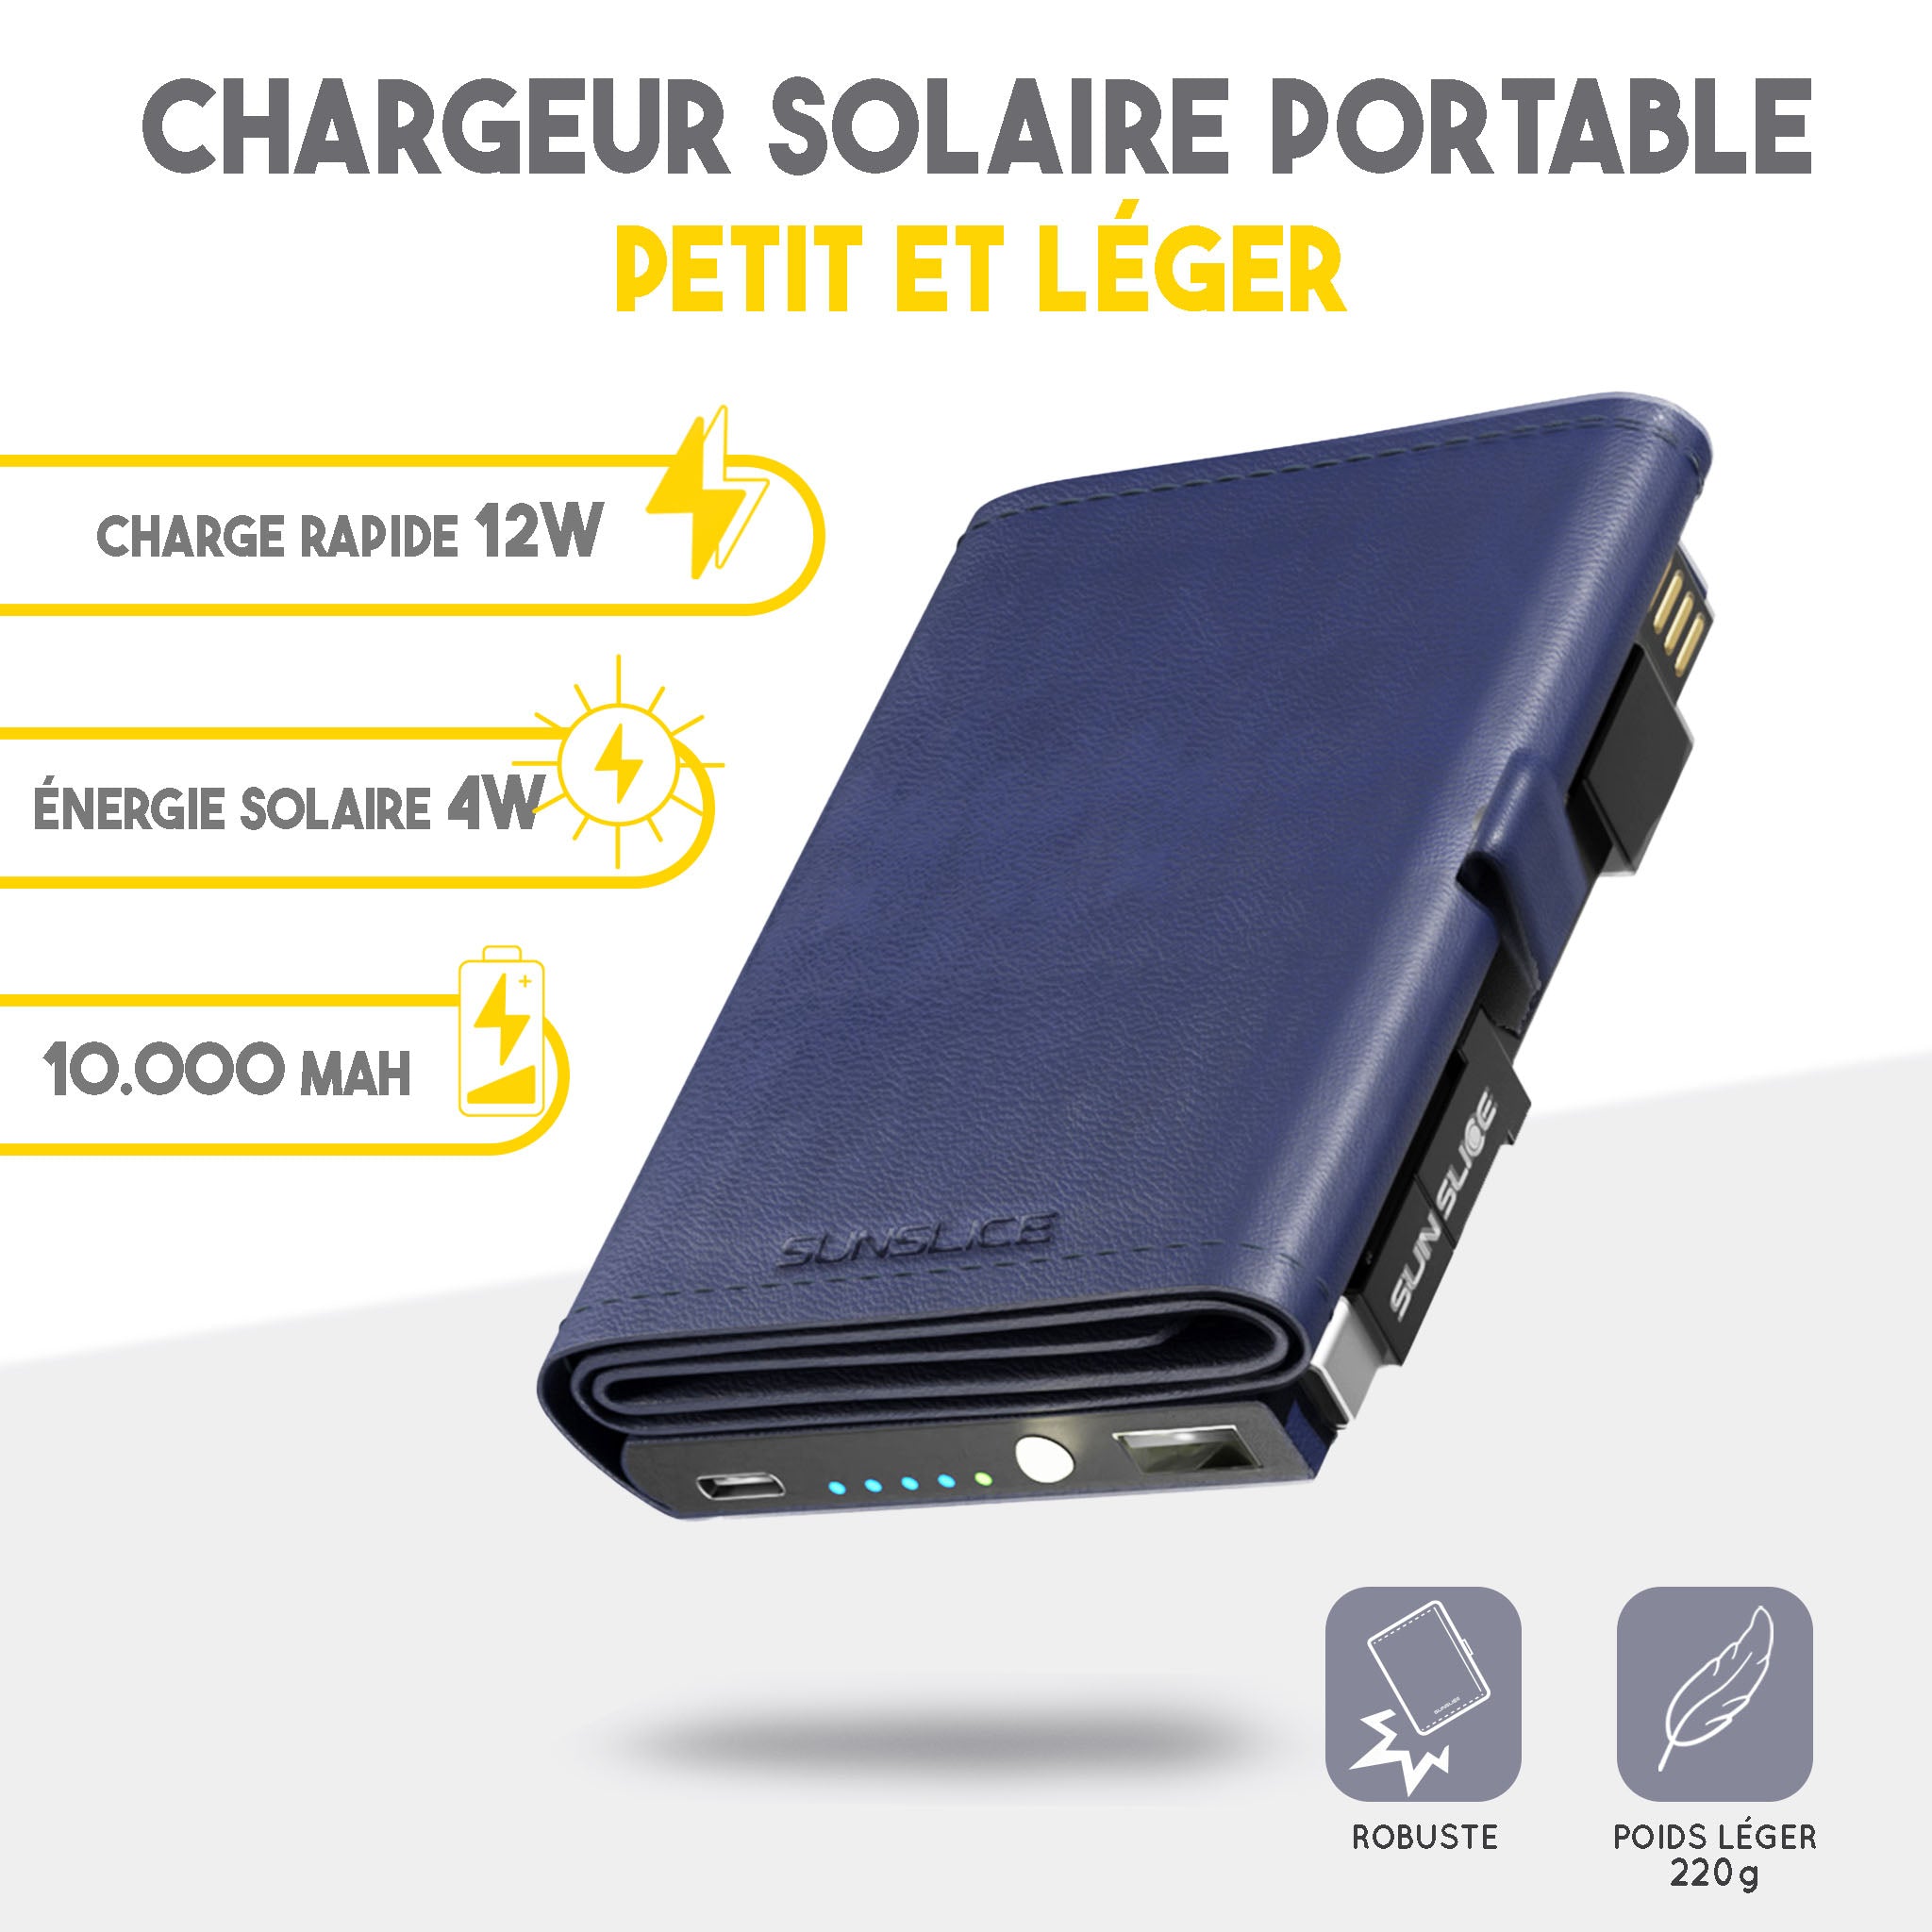 Petit chargeur solaire portable et léger. Flottant fermé photon au milieu de l'image